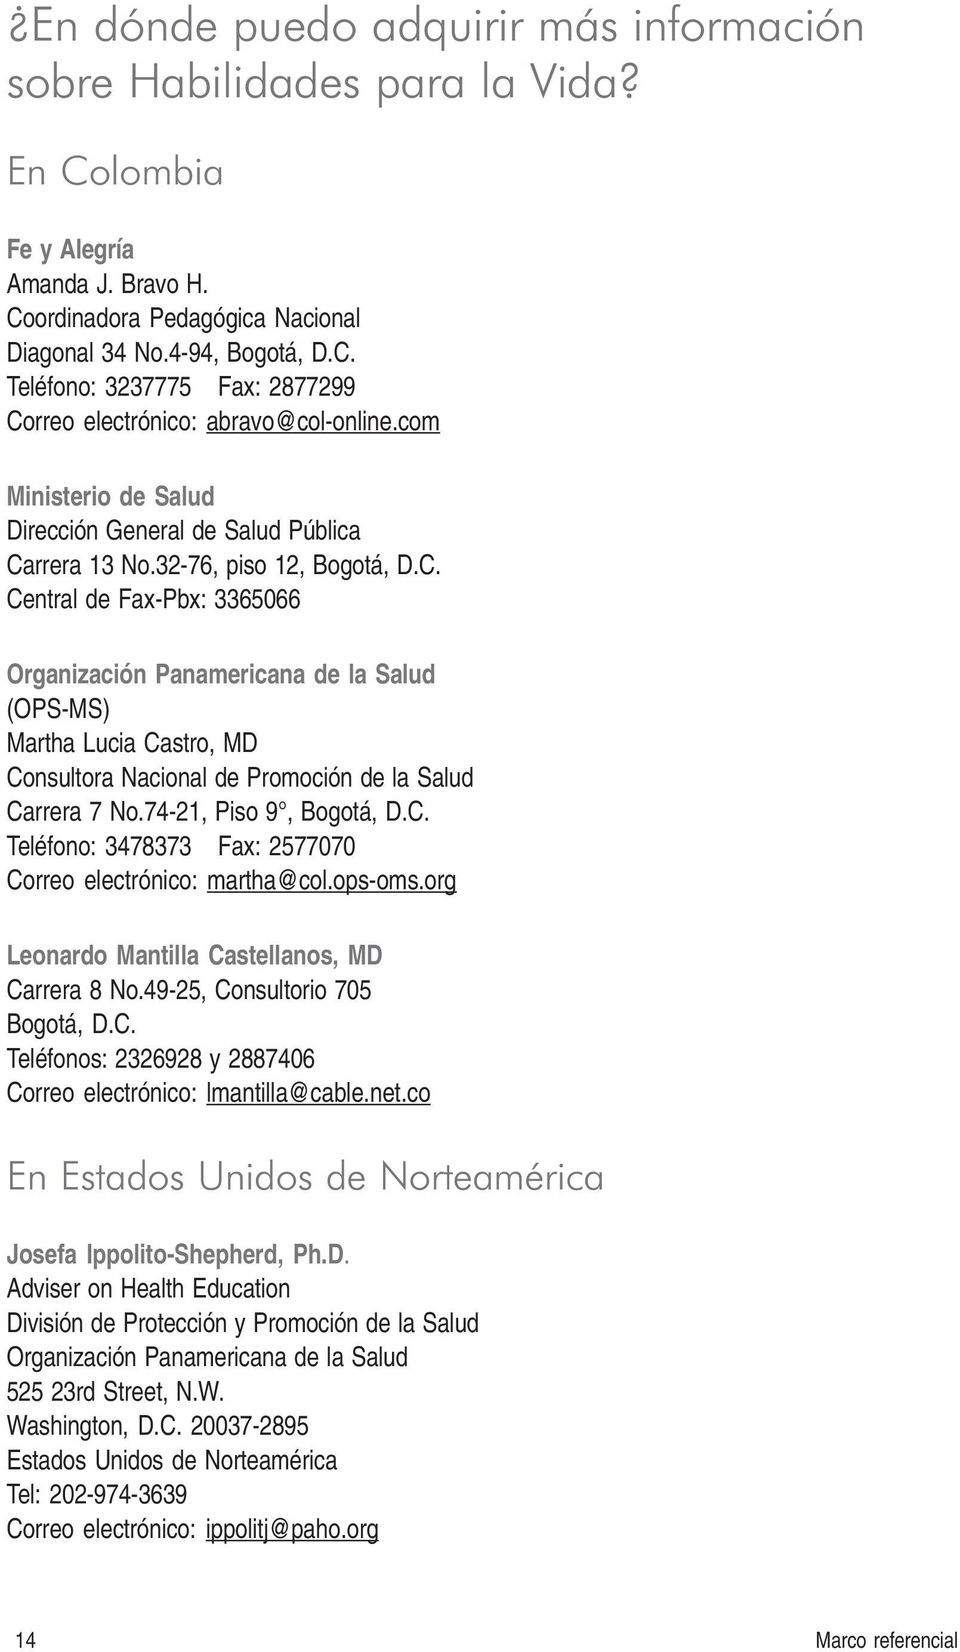 rrera 13 No.32-76, piso 12, Bogotá, D.C. Cetral de Fax-Pbx: 3365066 Orgaizació Paamericaa de la Salud (OPS-MS) Martha Lucia Castro, MD Cosultora Nacioal de Promoció de la Salud Carrera 7 No.